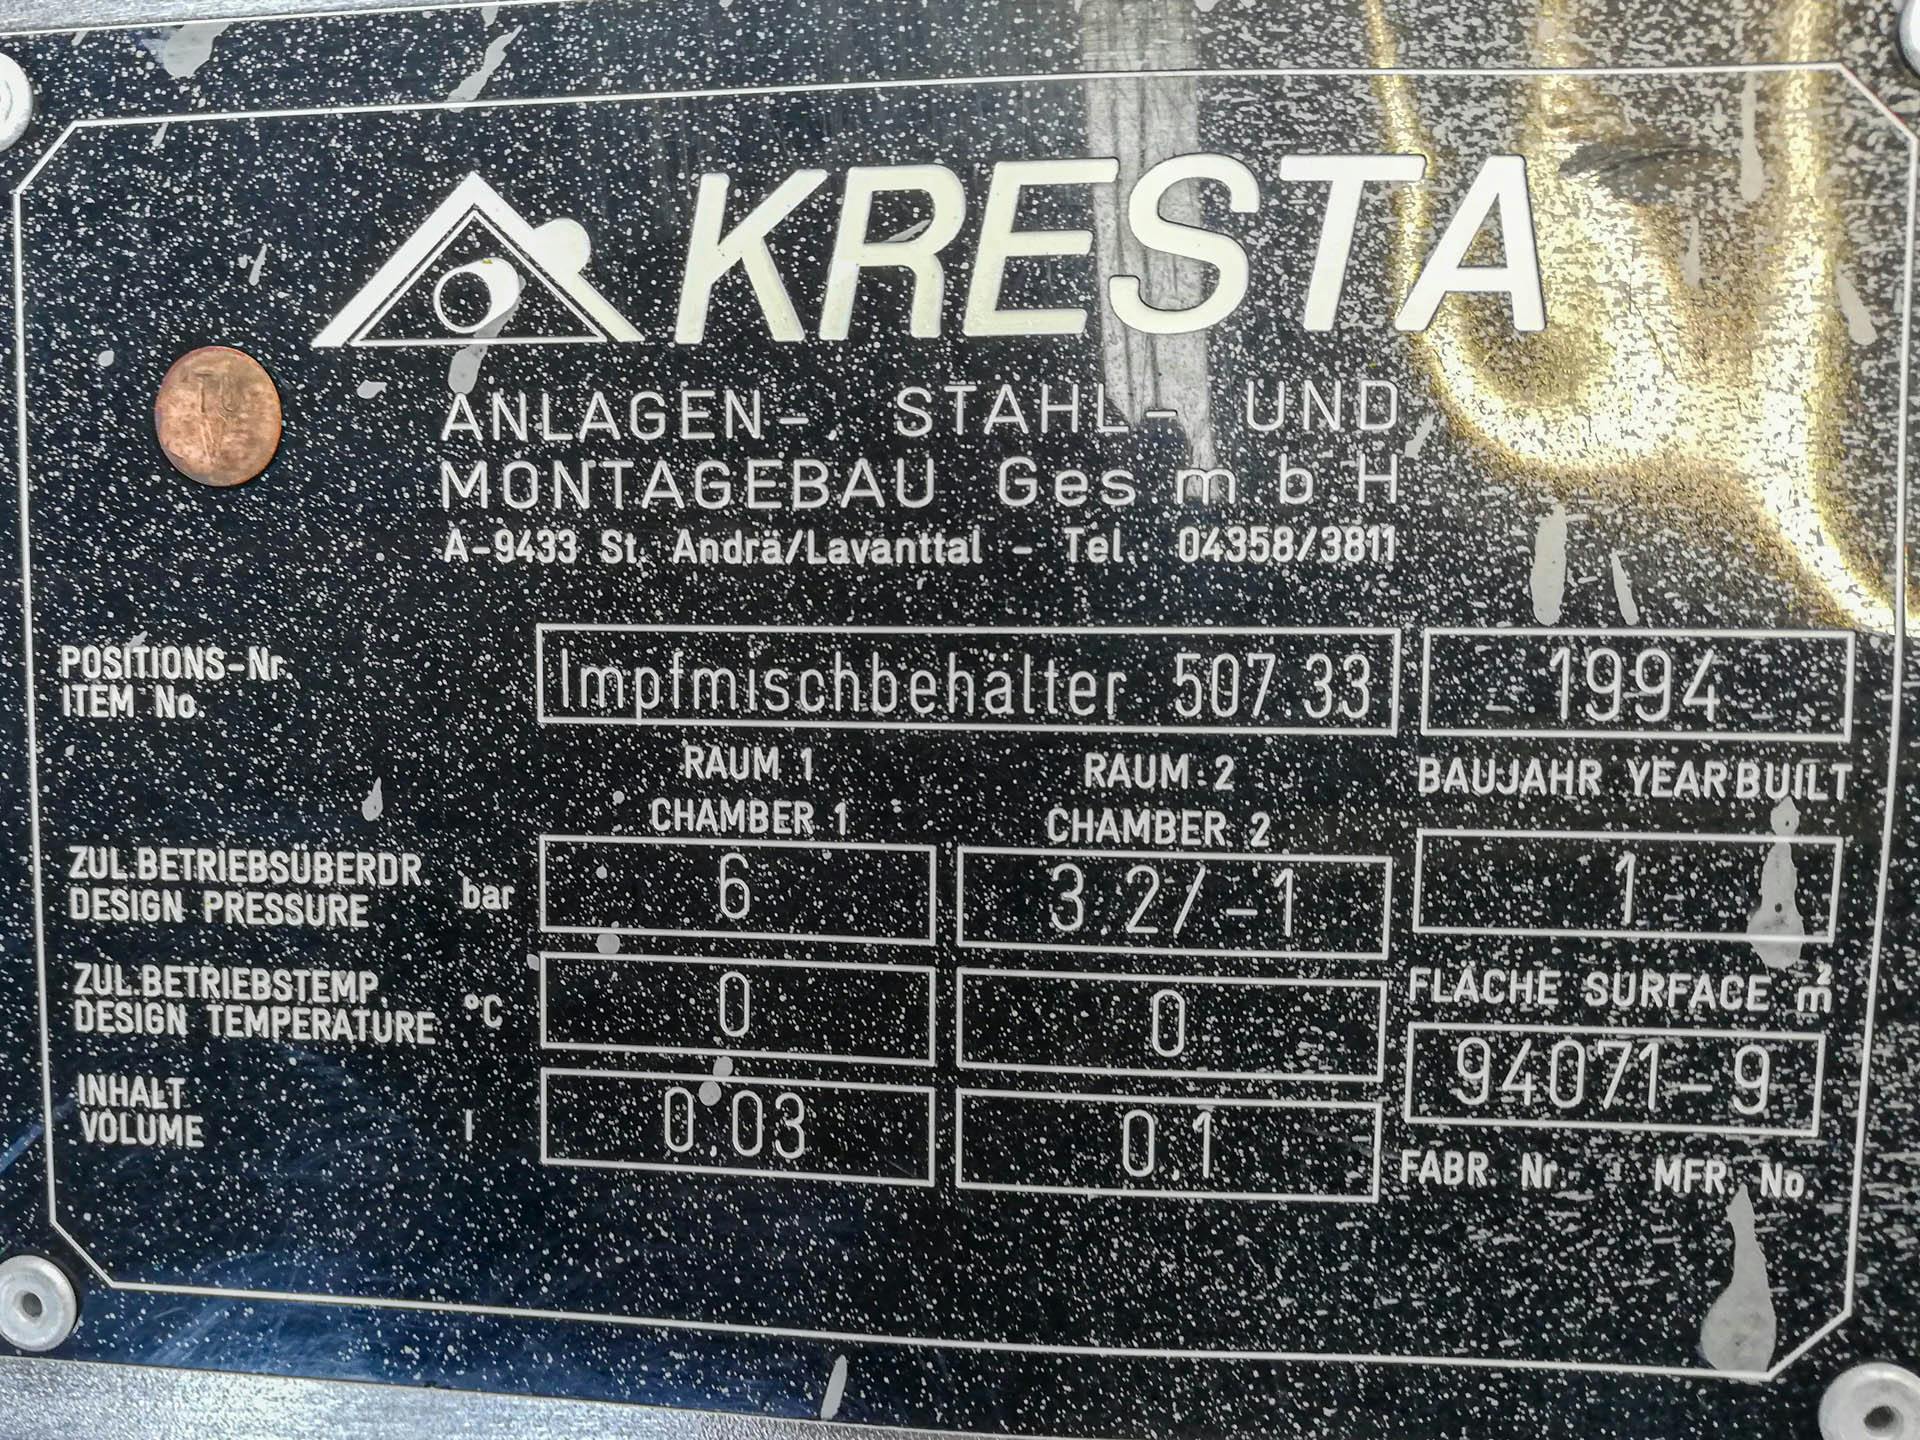 Kresta 150 Ltr - Serbatoio a pressione - image 4